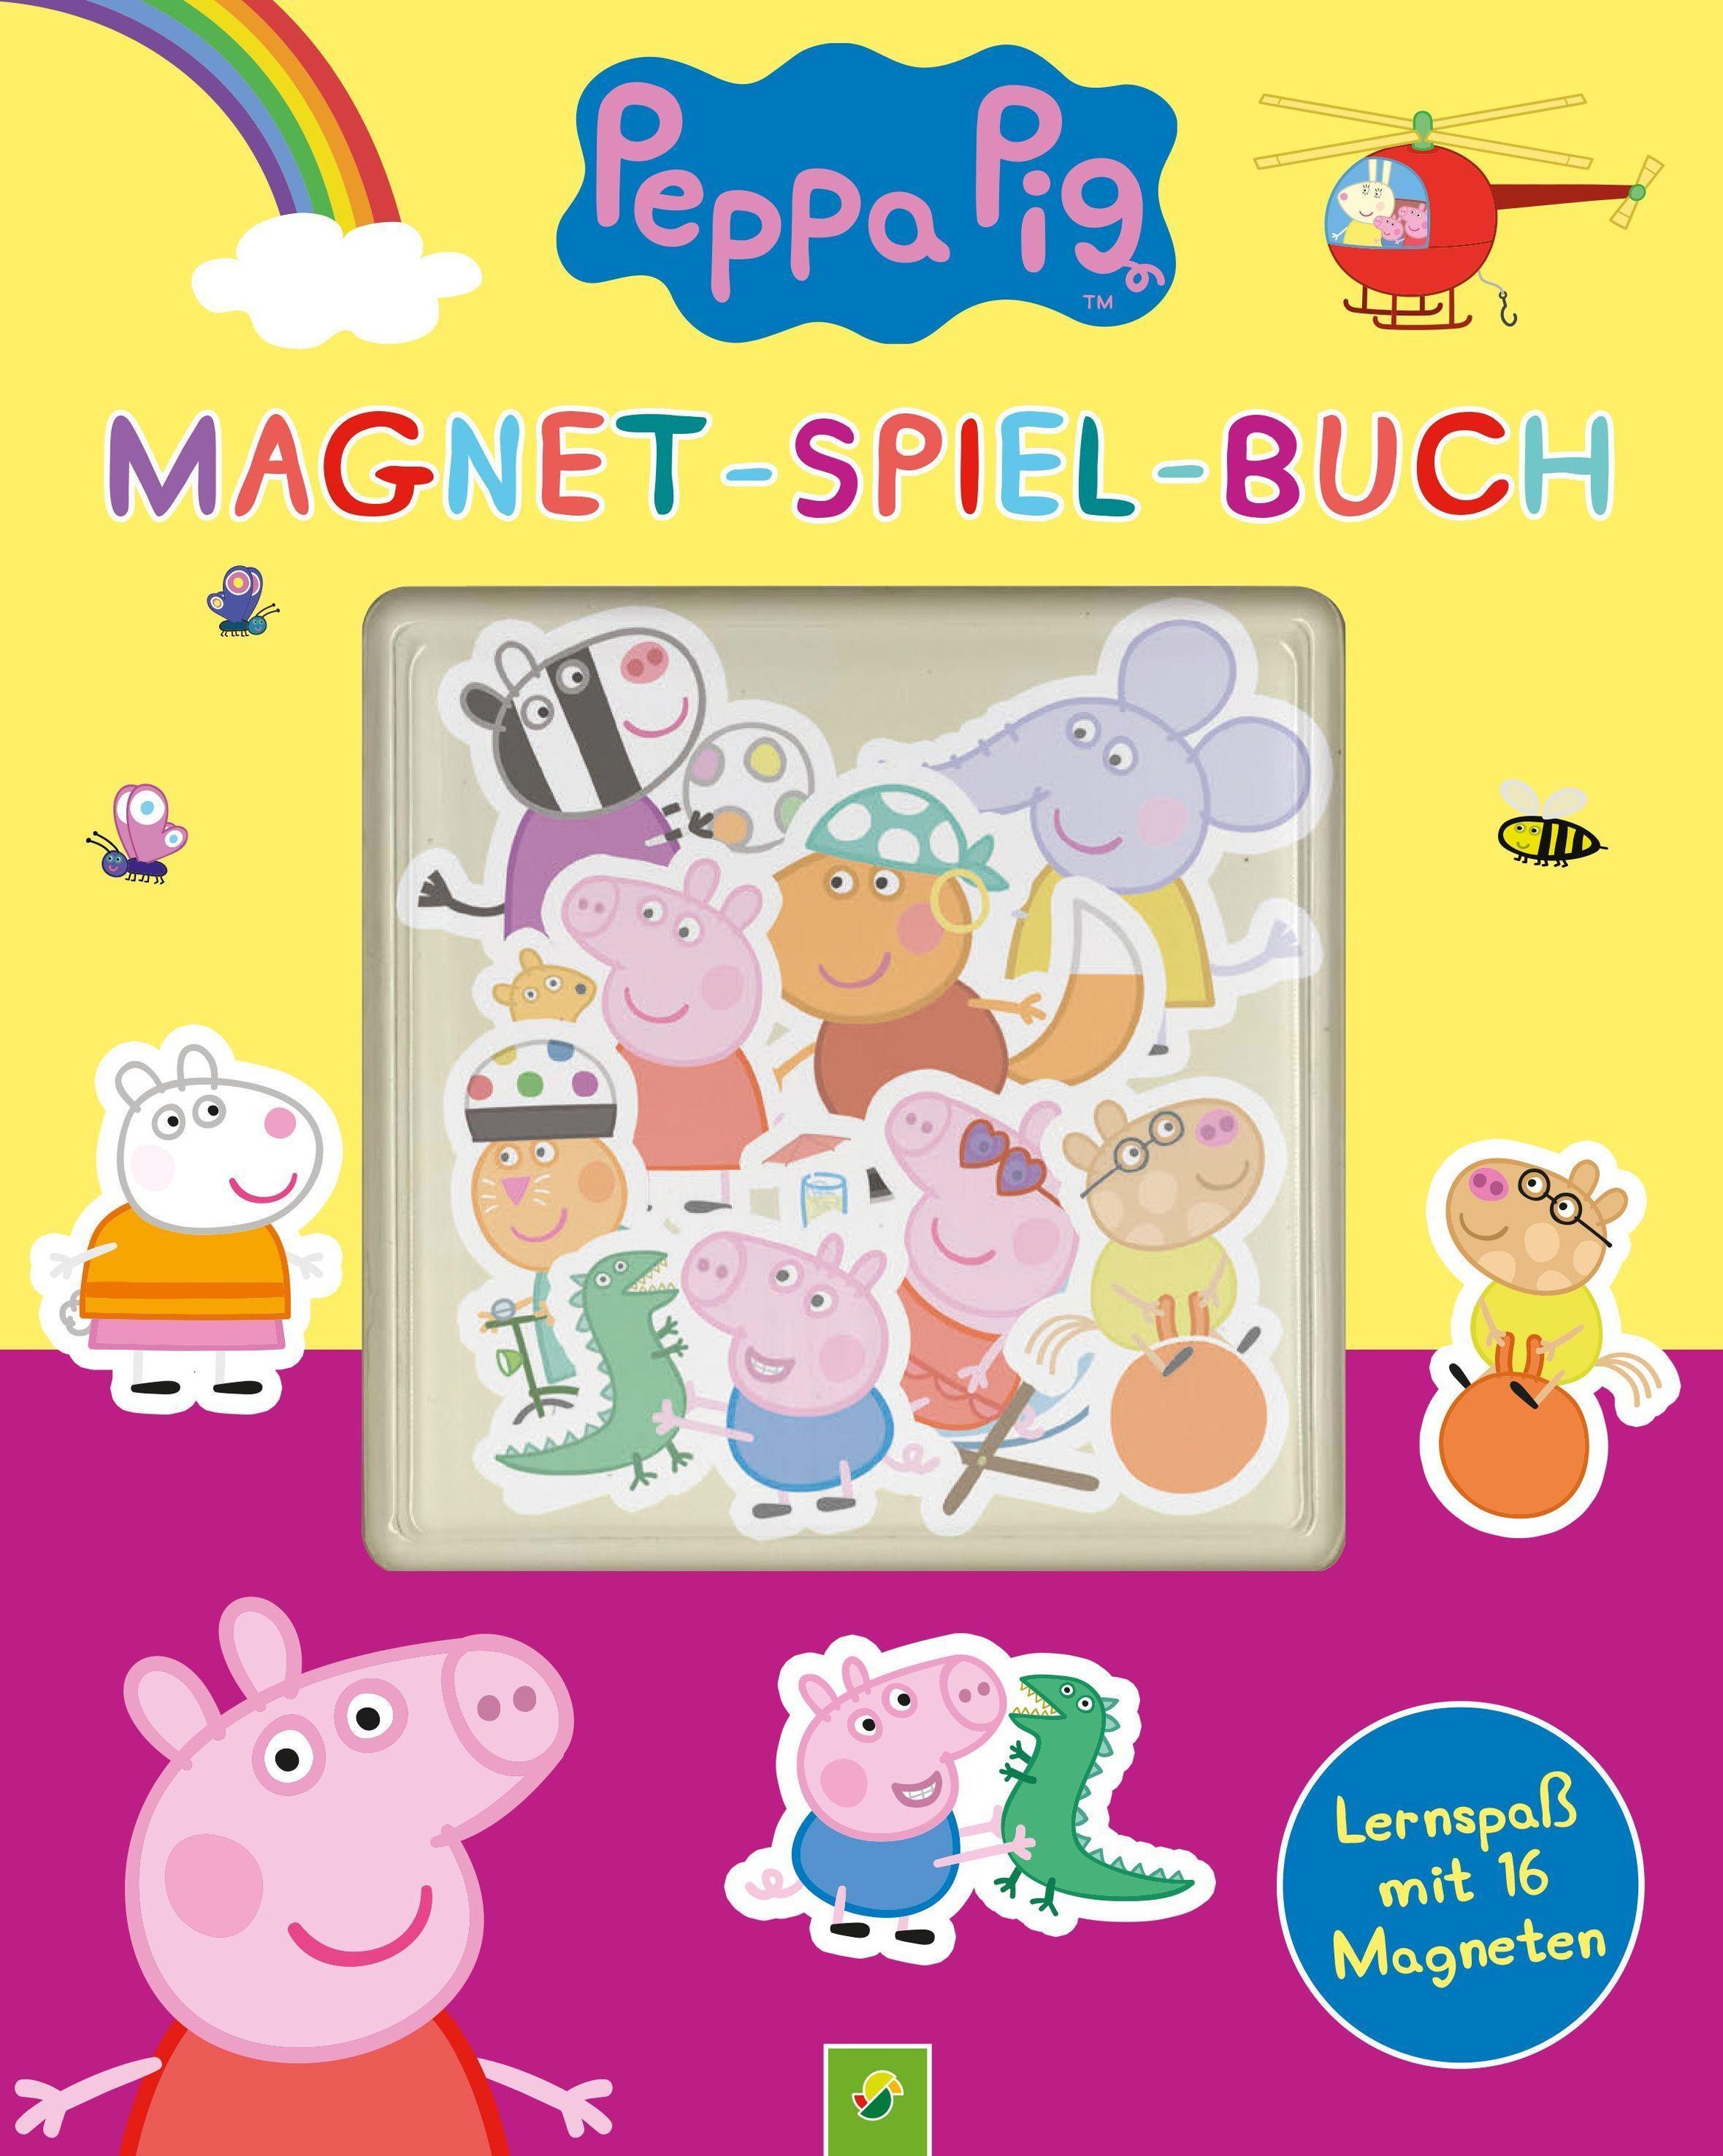 Peppa Pig Magnet-Spiel-Buch Buch jetzt online bei Weltbild.ch bestellen